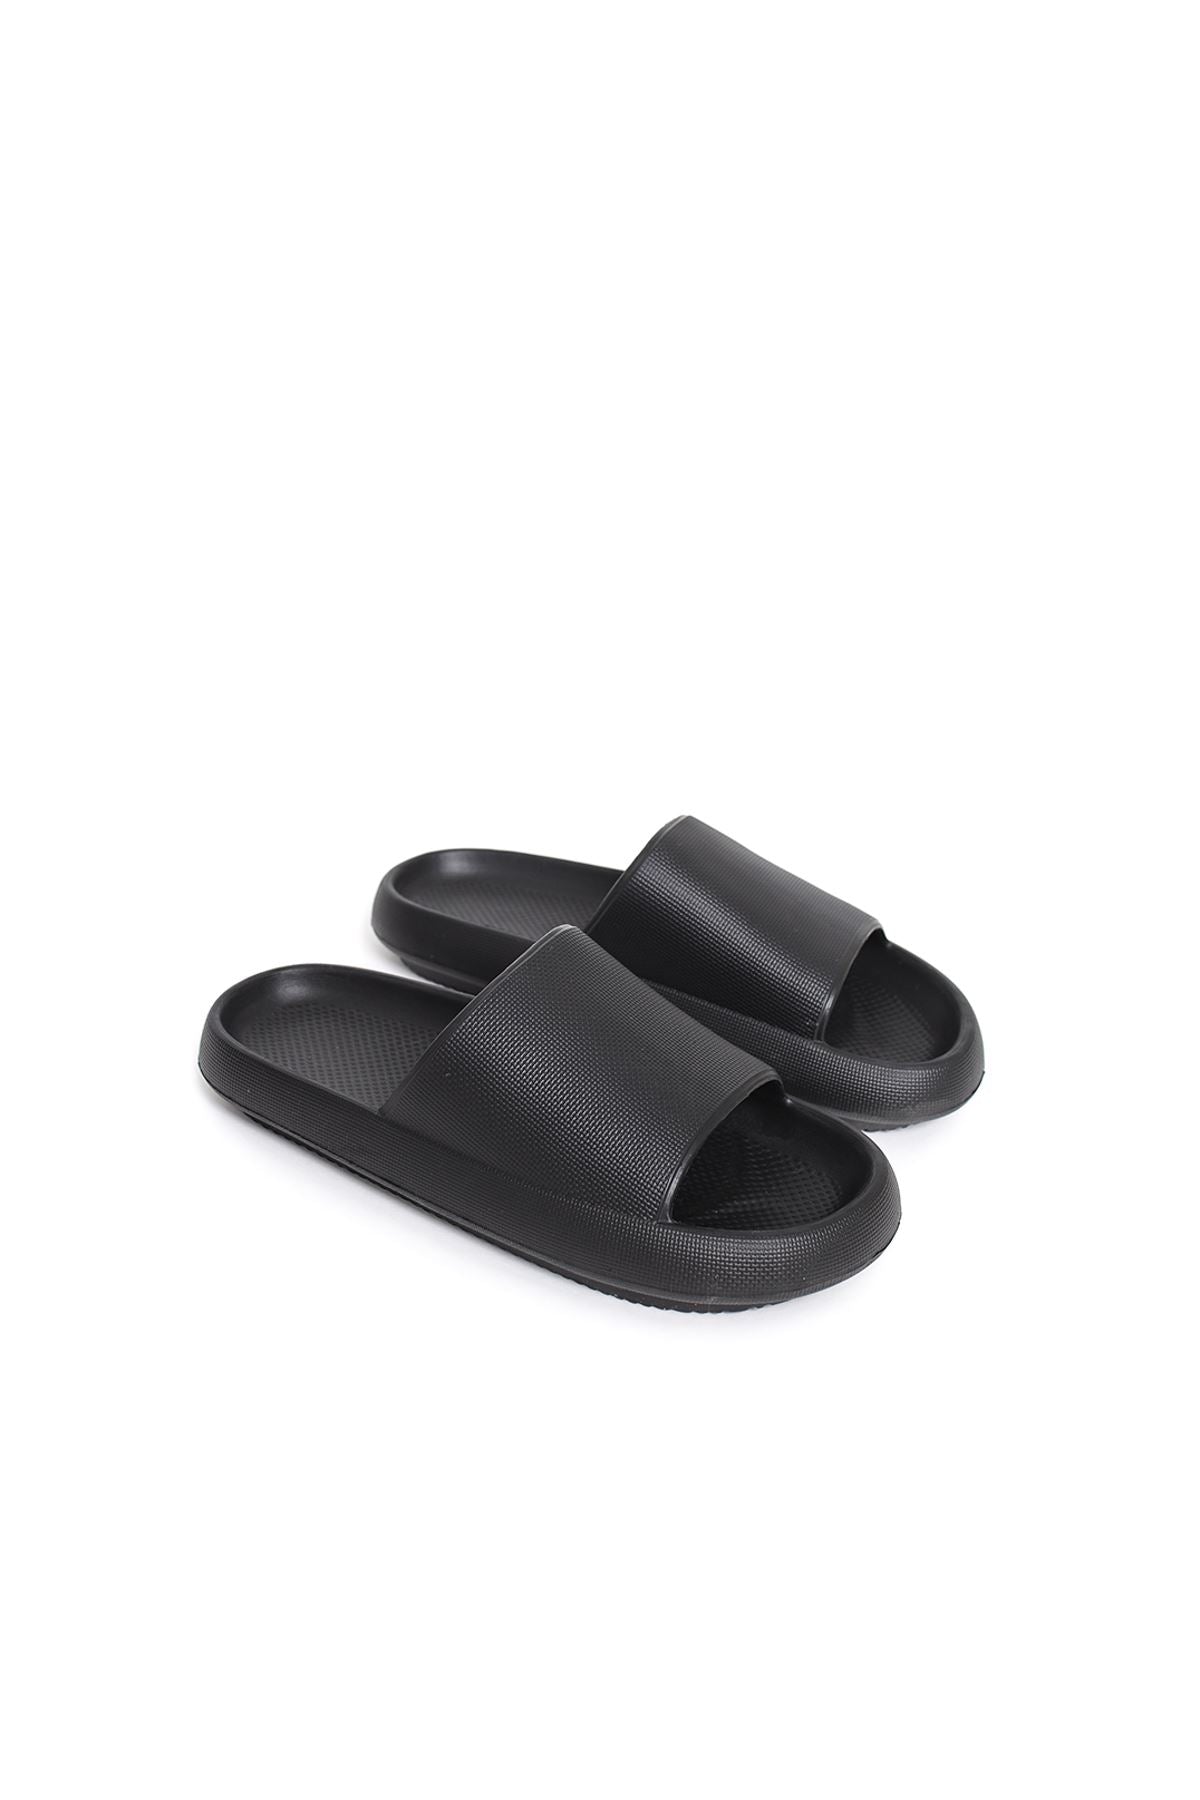 STM Design Cool Men's Slippers BLACK - STREET MODE ™